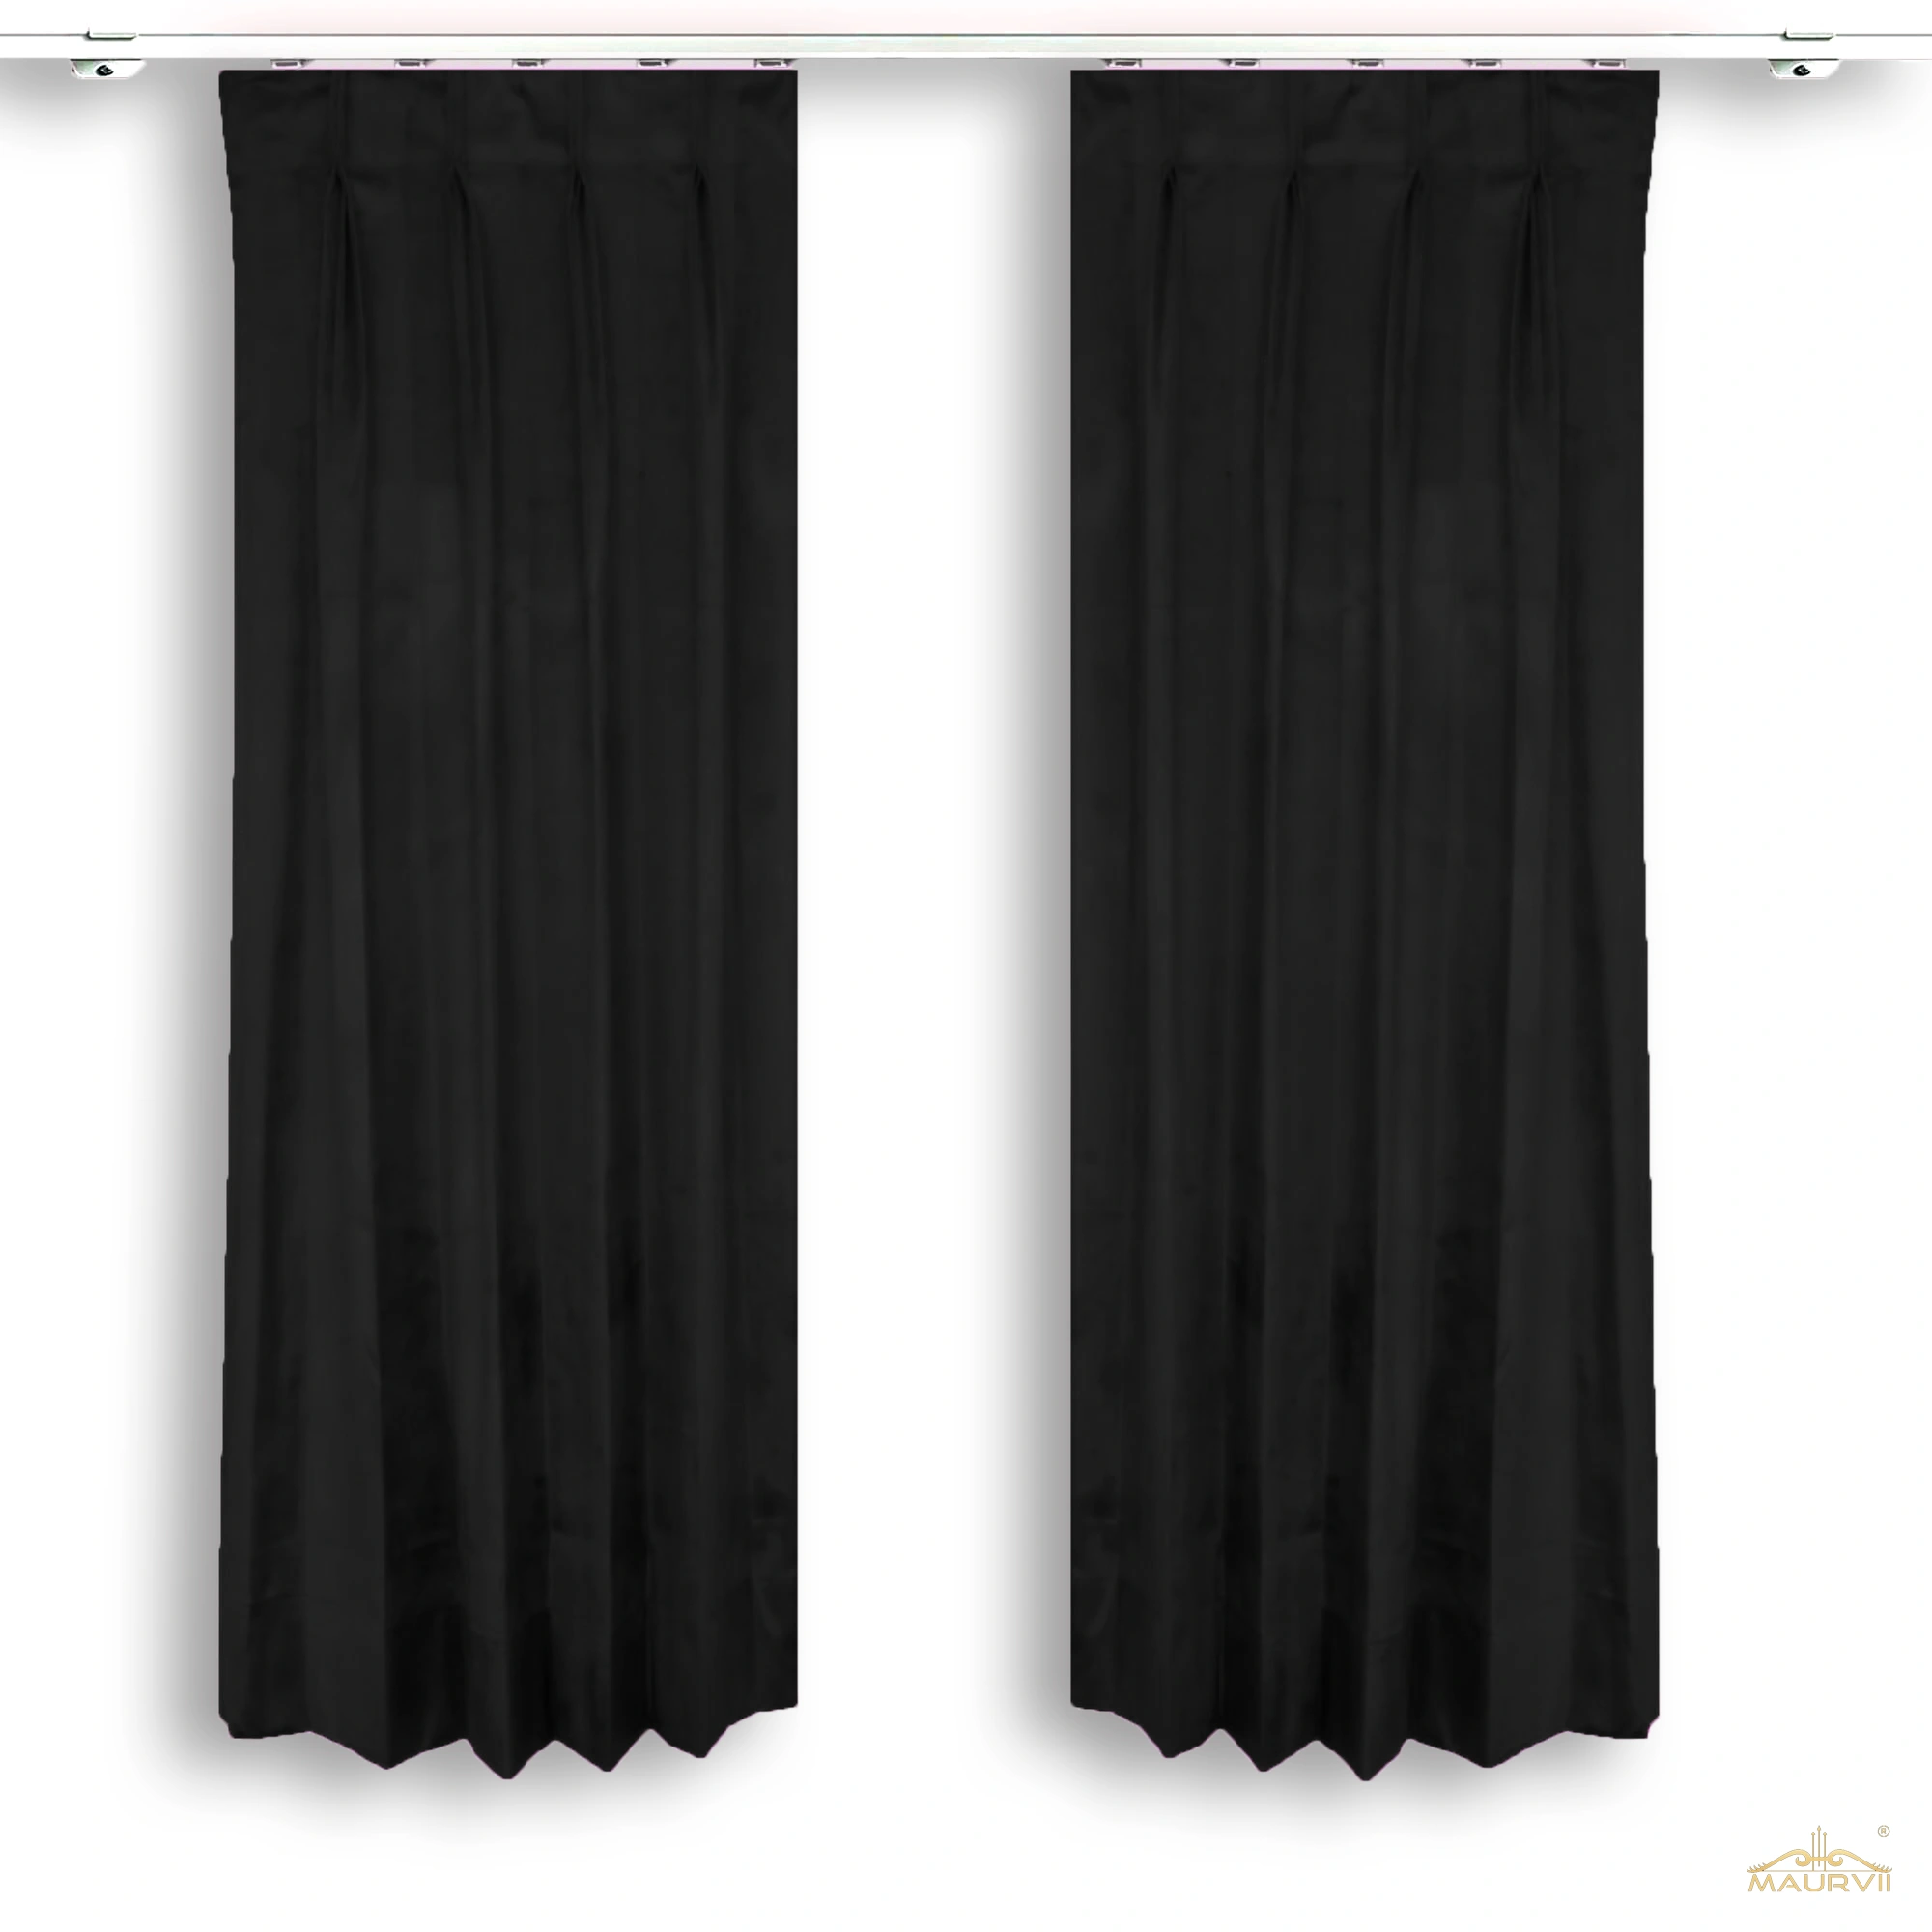 Black velvet room curtains for living room